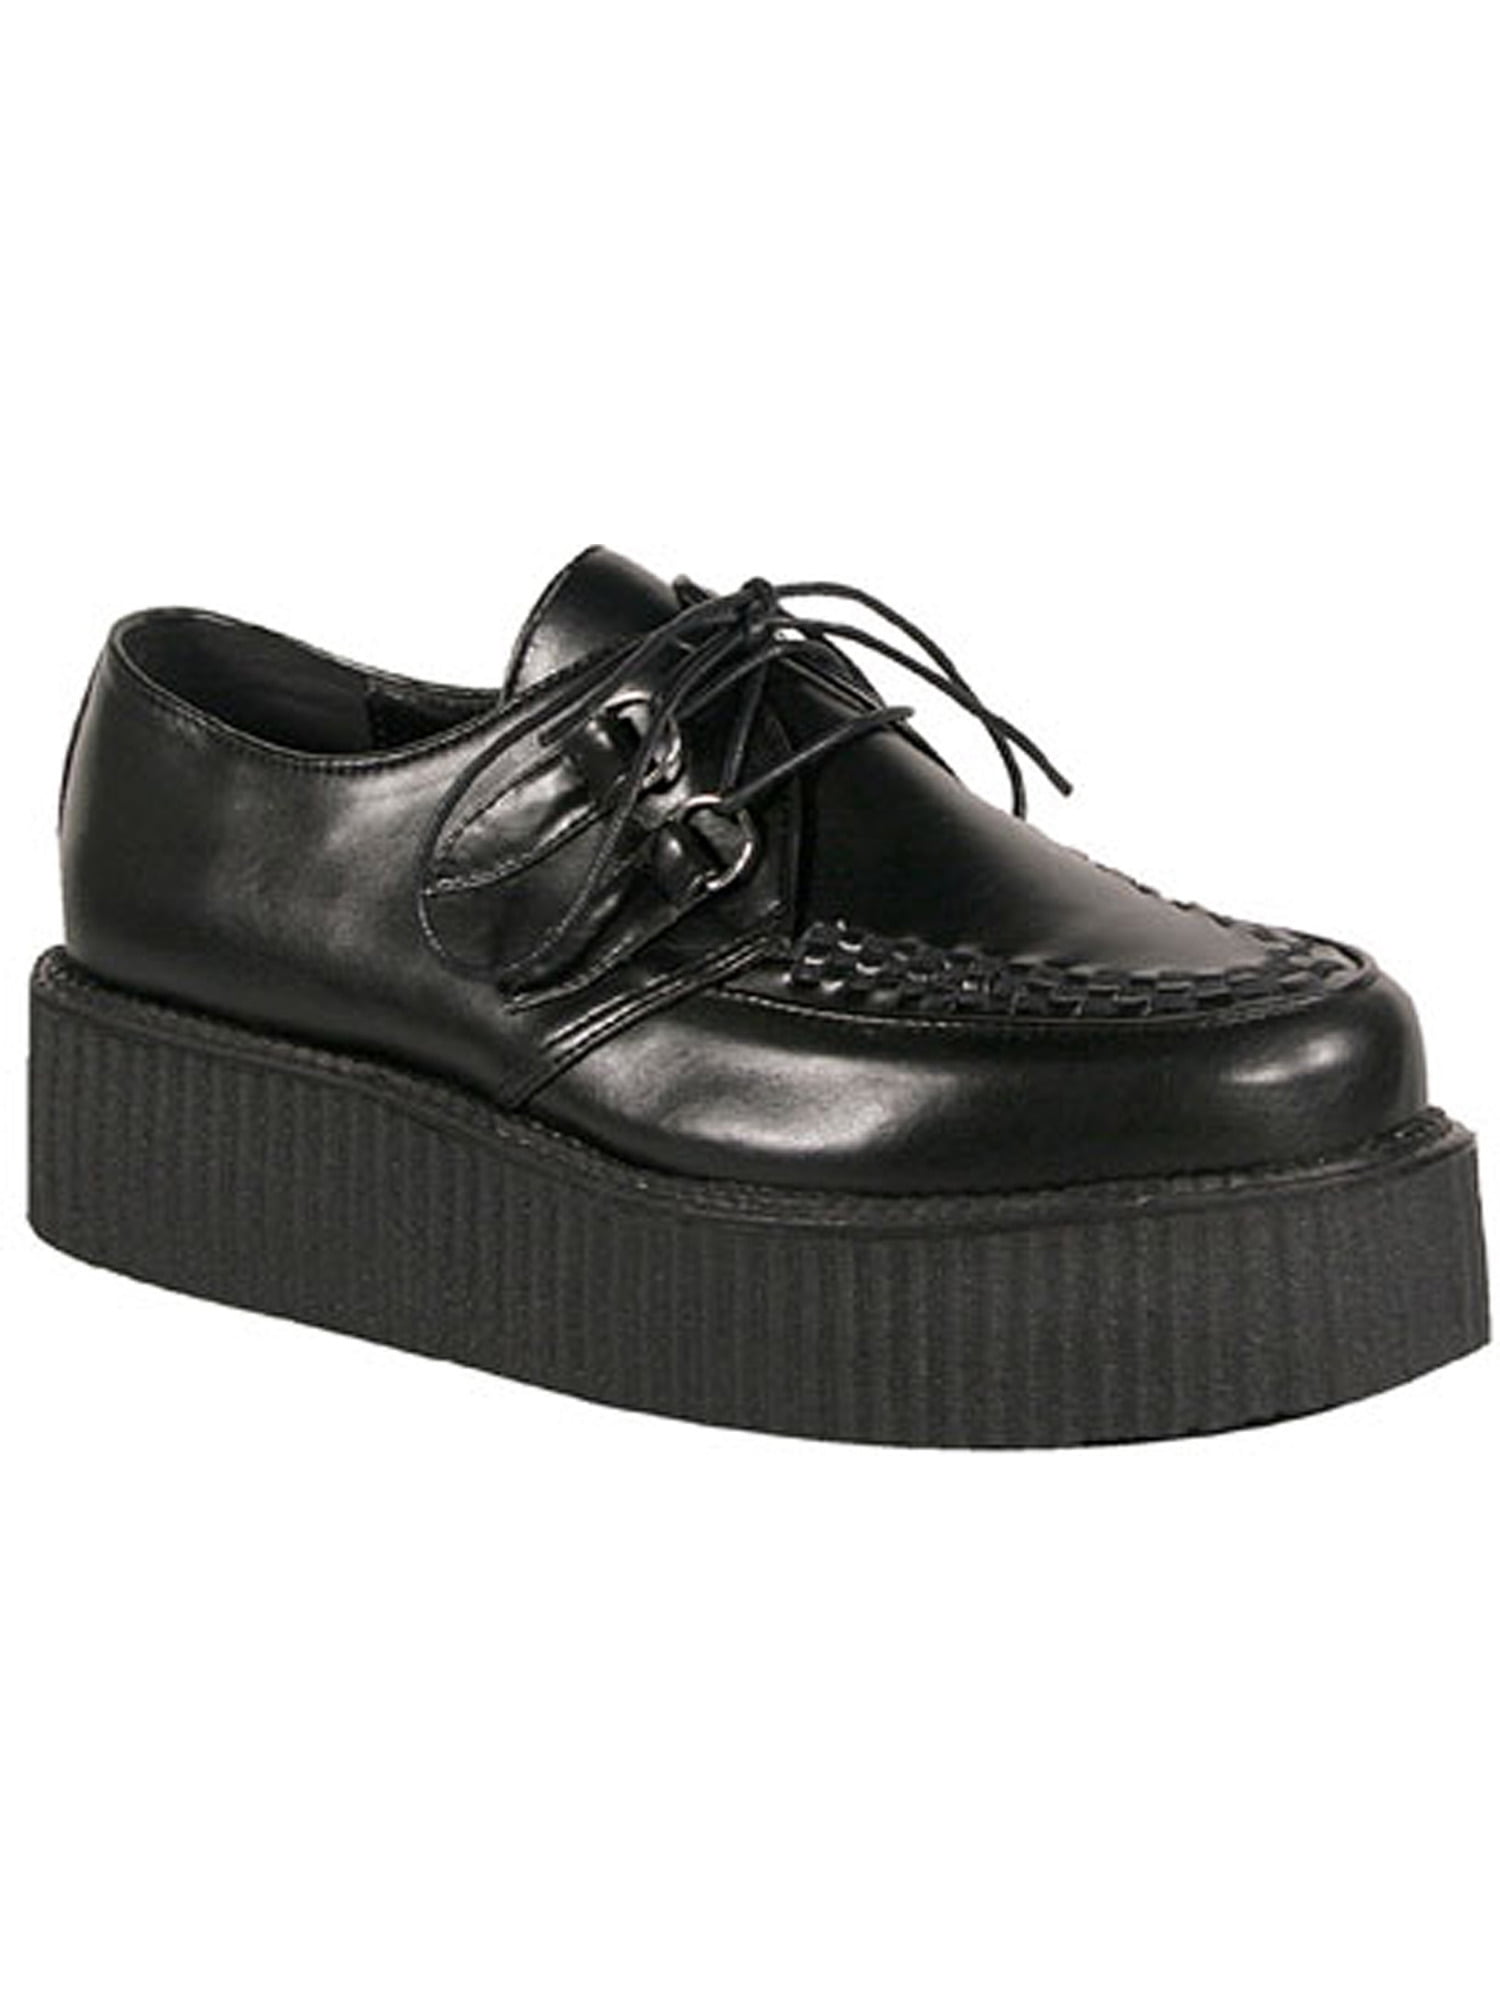 Мужская обувь на платформе. Demonia Shoes туфли мужские. Demonia Creeper. Demonia Shoes чёрный. Мужские туфли на платформе.